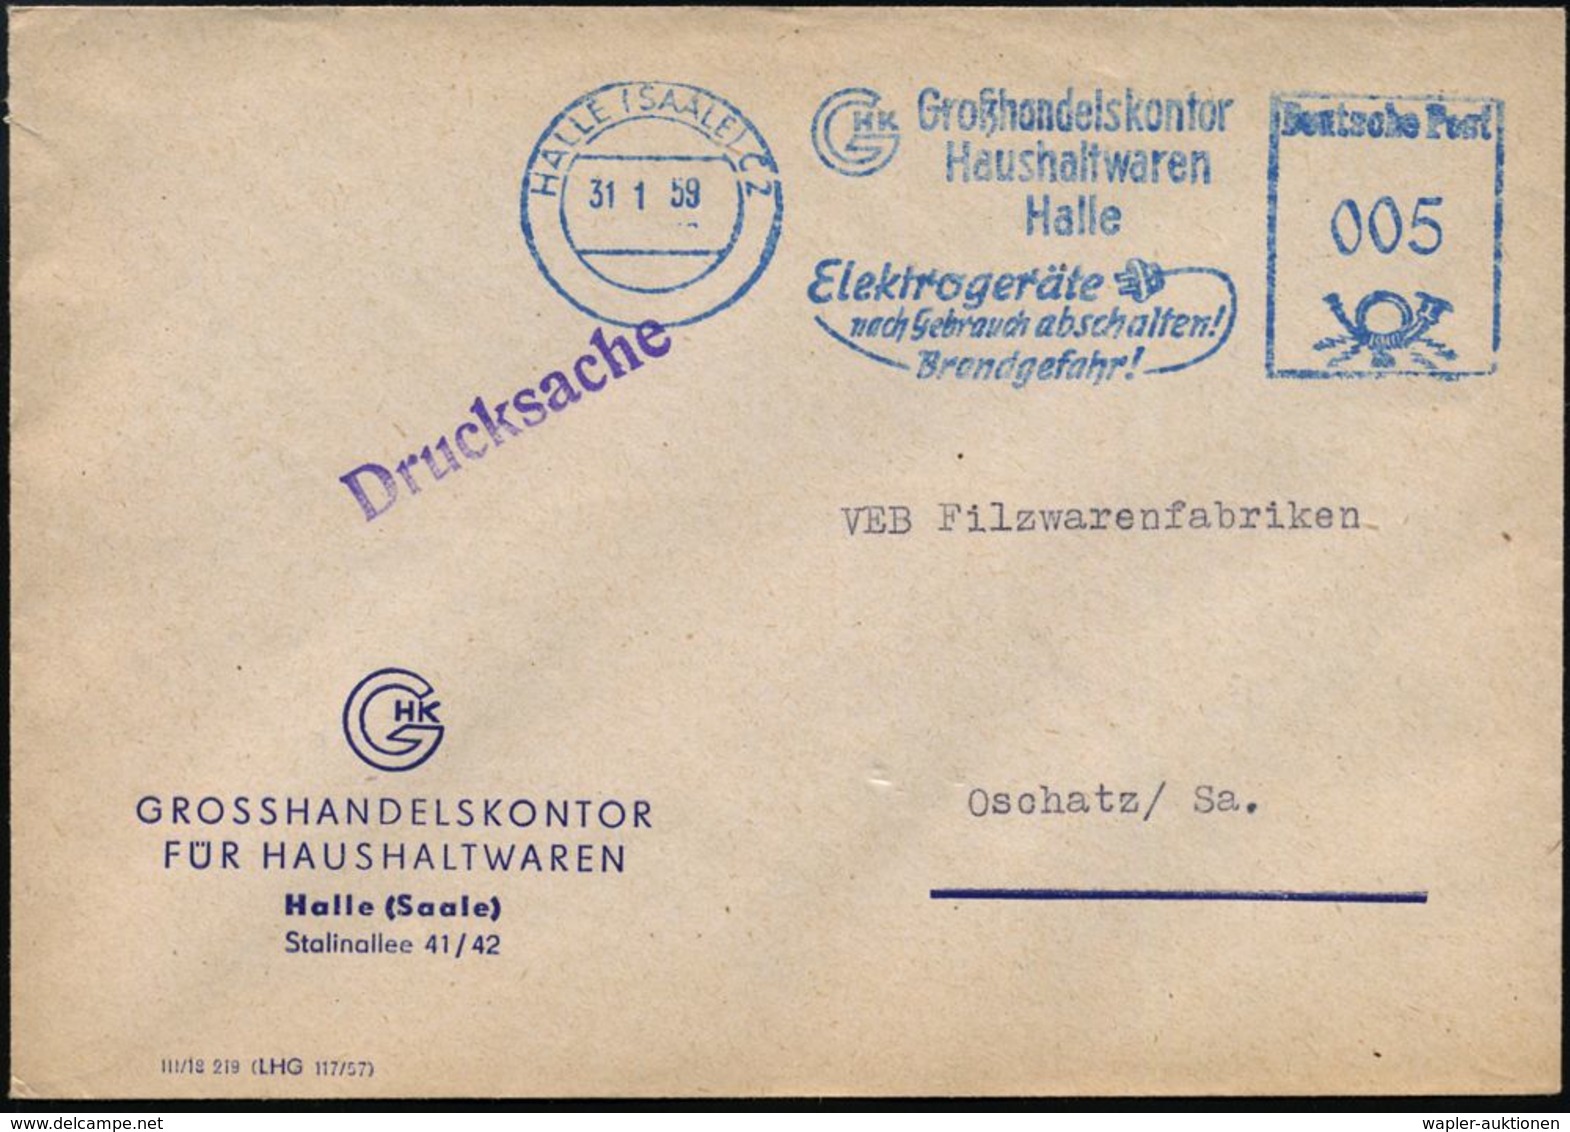 HALLE (SAALE) C2/ Großhandelskontor/ Haushaltswaren/ ..Elektrogeräte/ Nach Gebrauch Abschalten!/  Brandgefahr! 1959 (31. - Pompieri